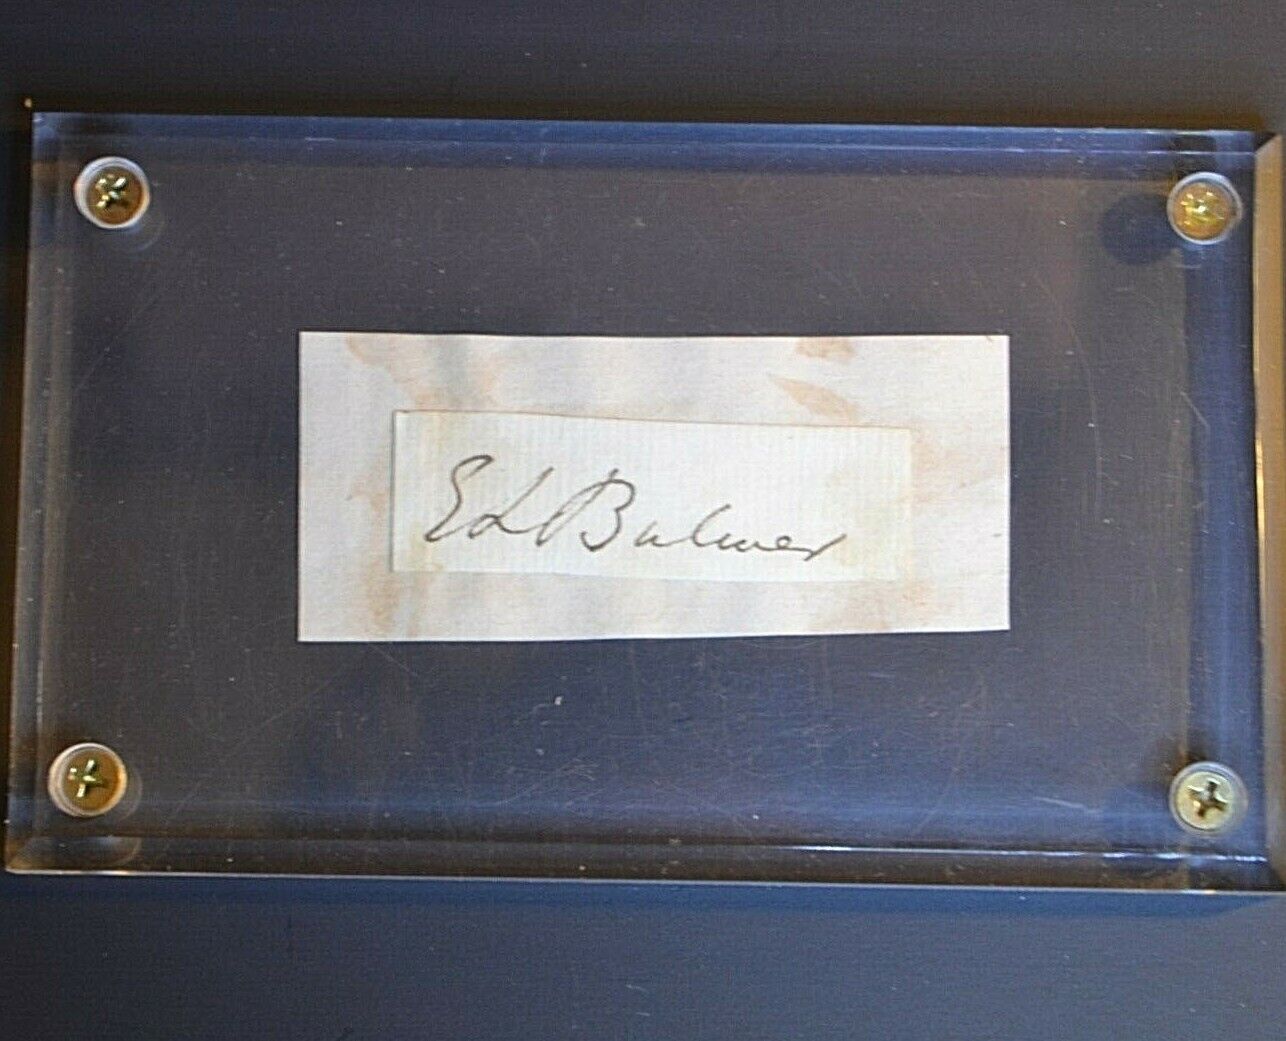 Edward Bulwer-Lytton Signature: 1803-1873 Baron, Knebworth, UK MP Hertfordshire